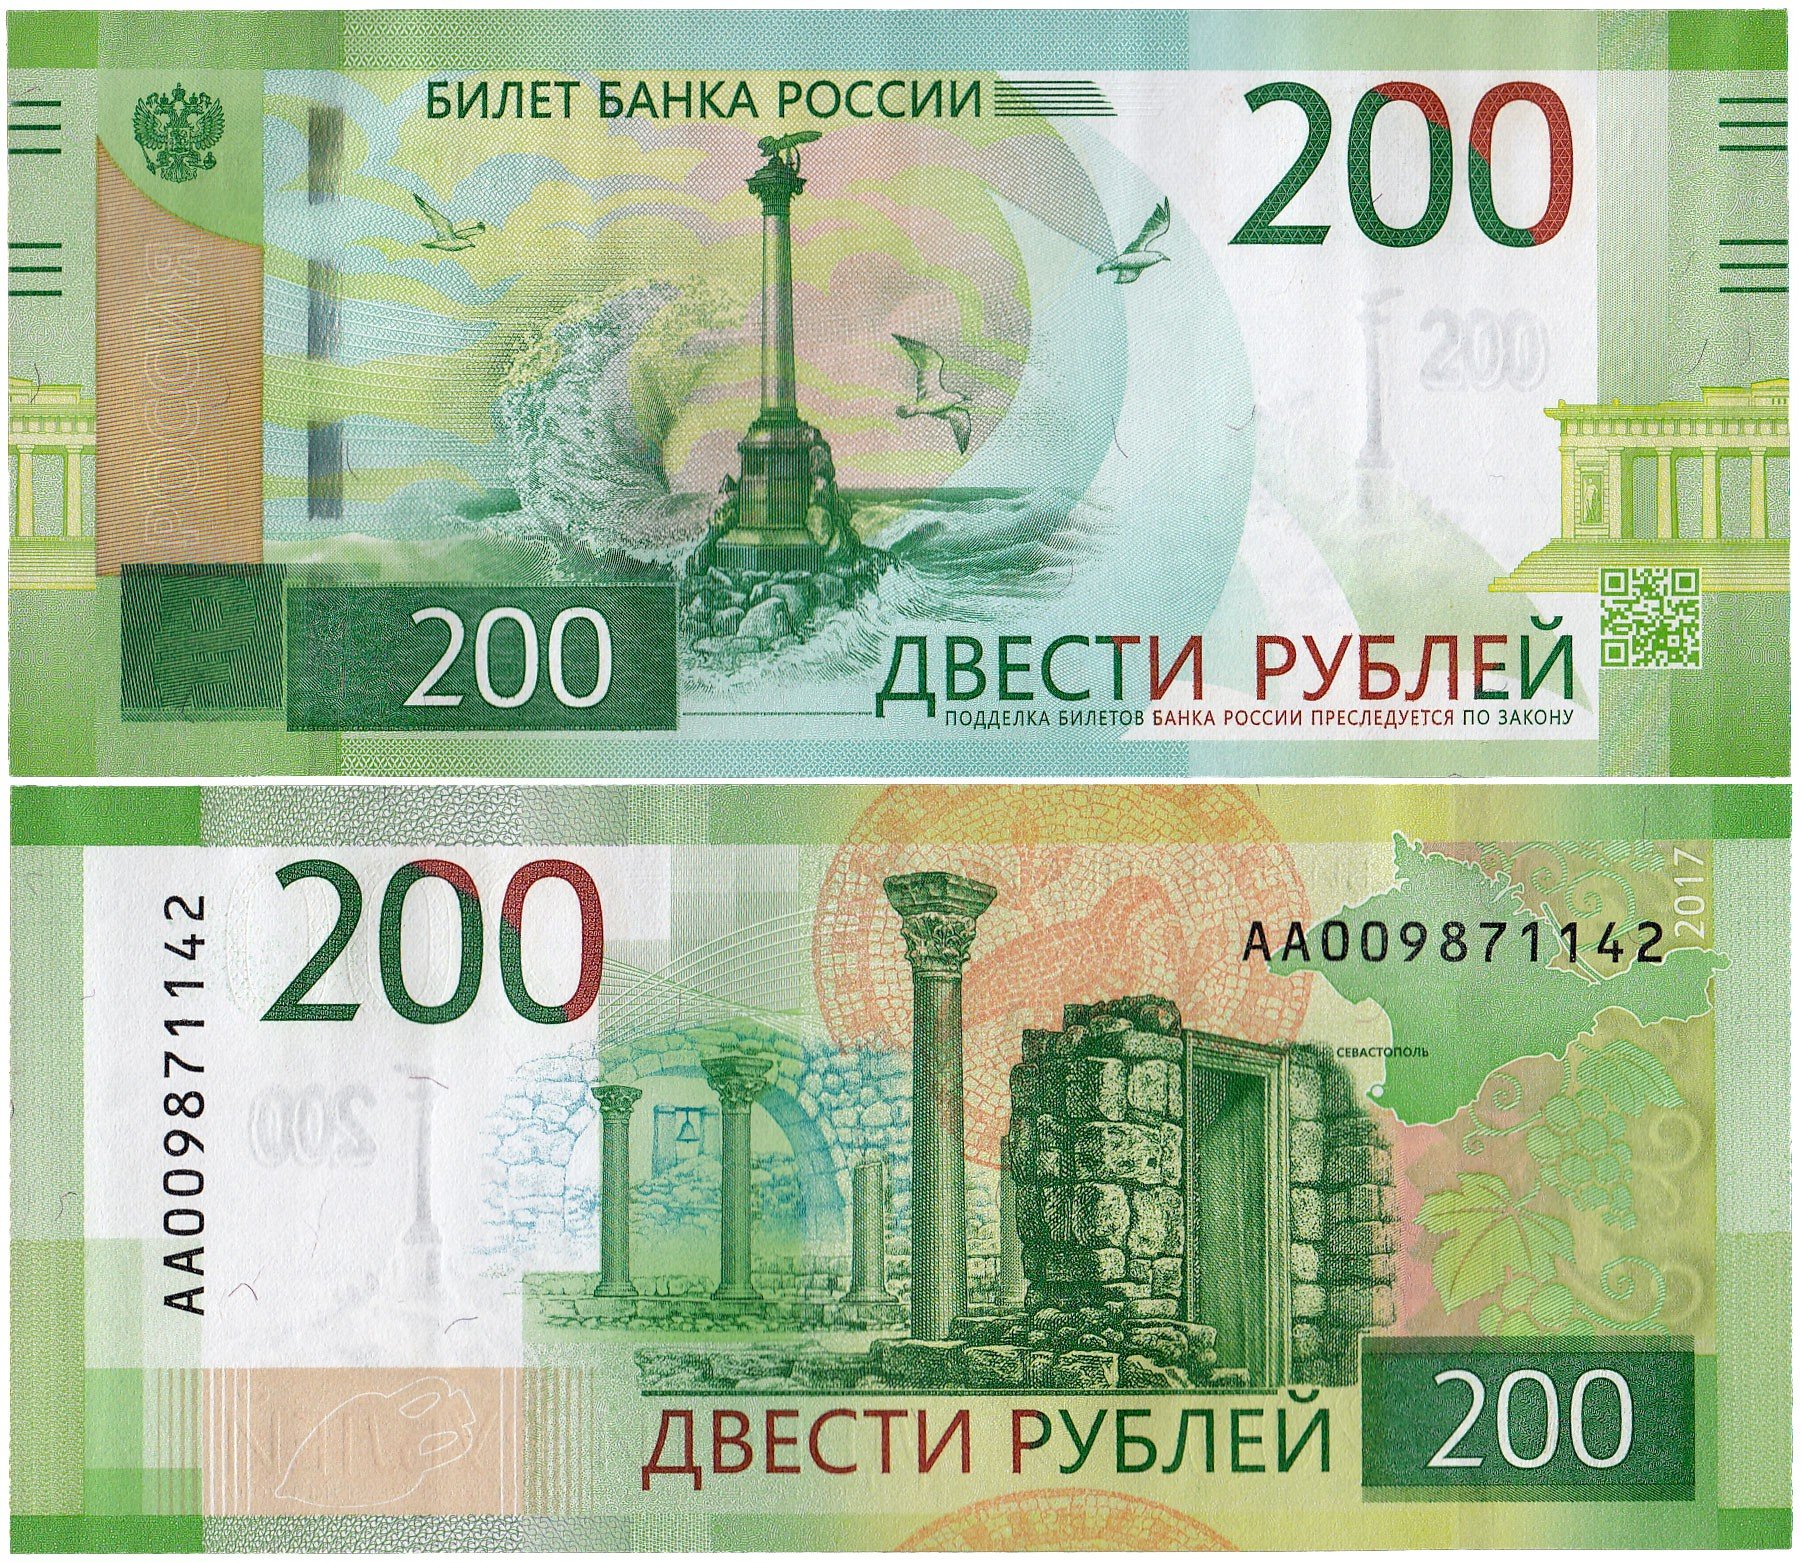 Банкнота 200 рублей 2017 стартовая серия АА стоимостью 290 руб.